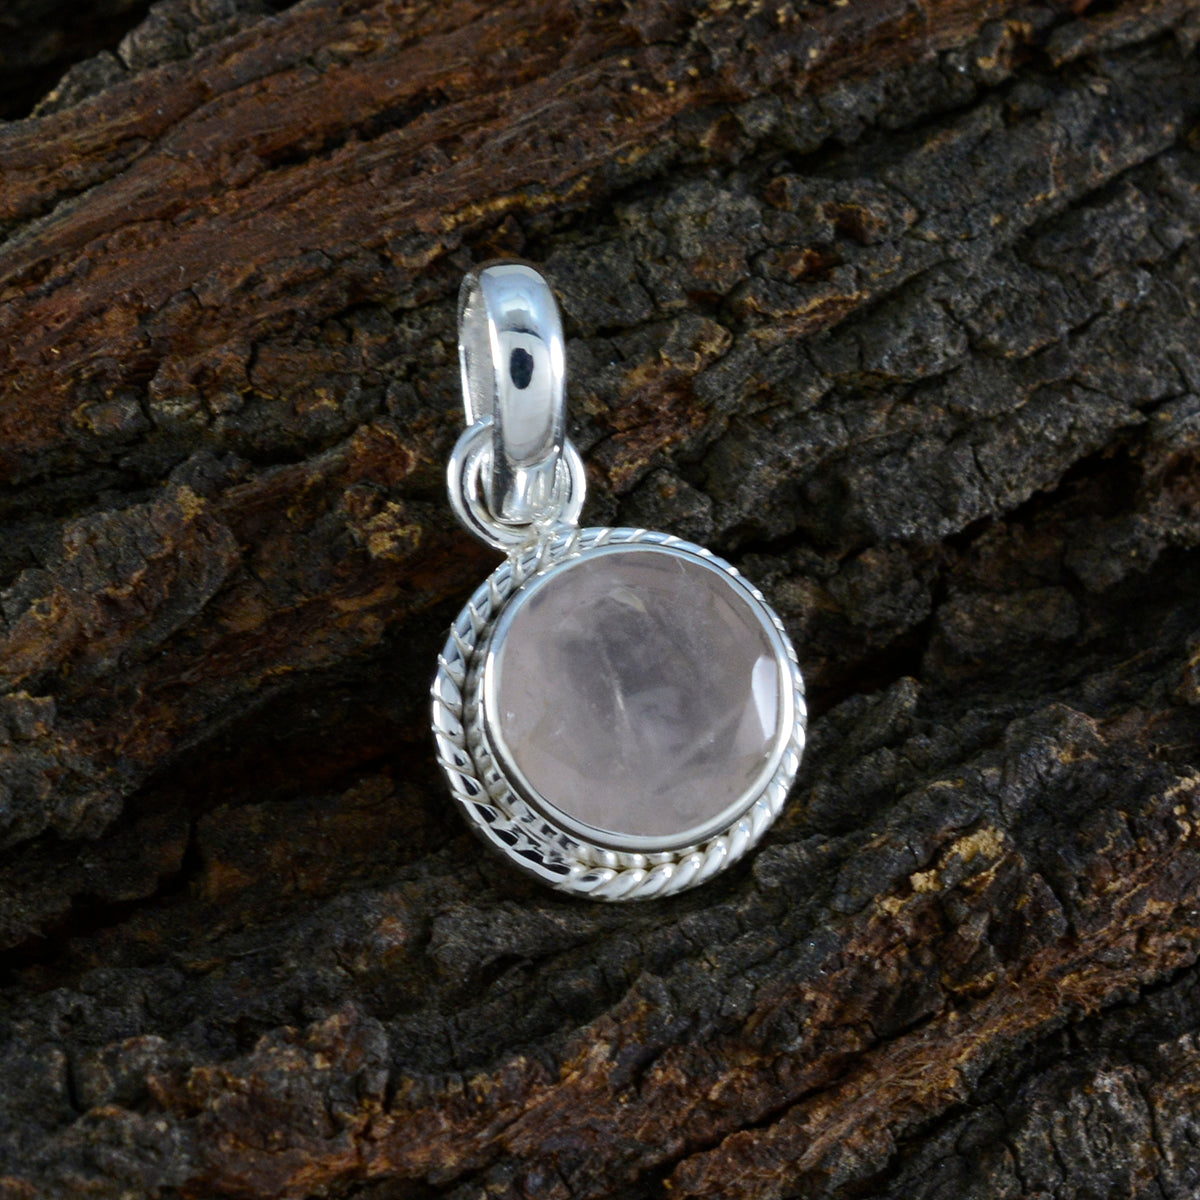 riyo accattivante ciondolo con pietra preziosa rotonda sfaccettata quarzo rosa rosa 1199 in argento sterling, regalo per la festa degli insegnanti